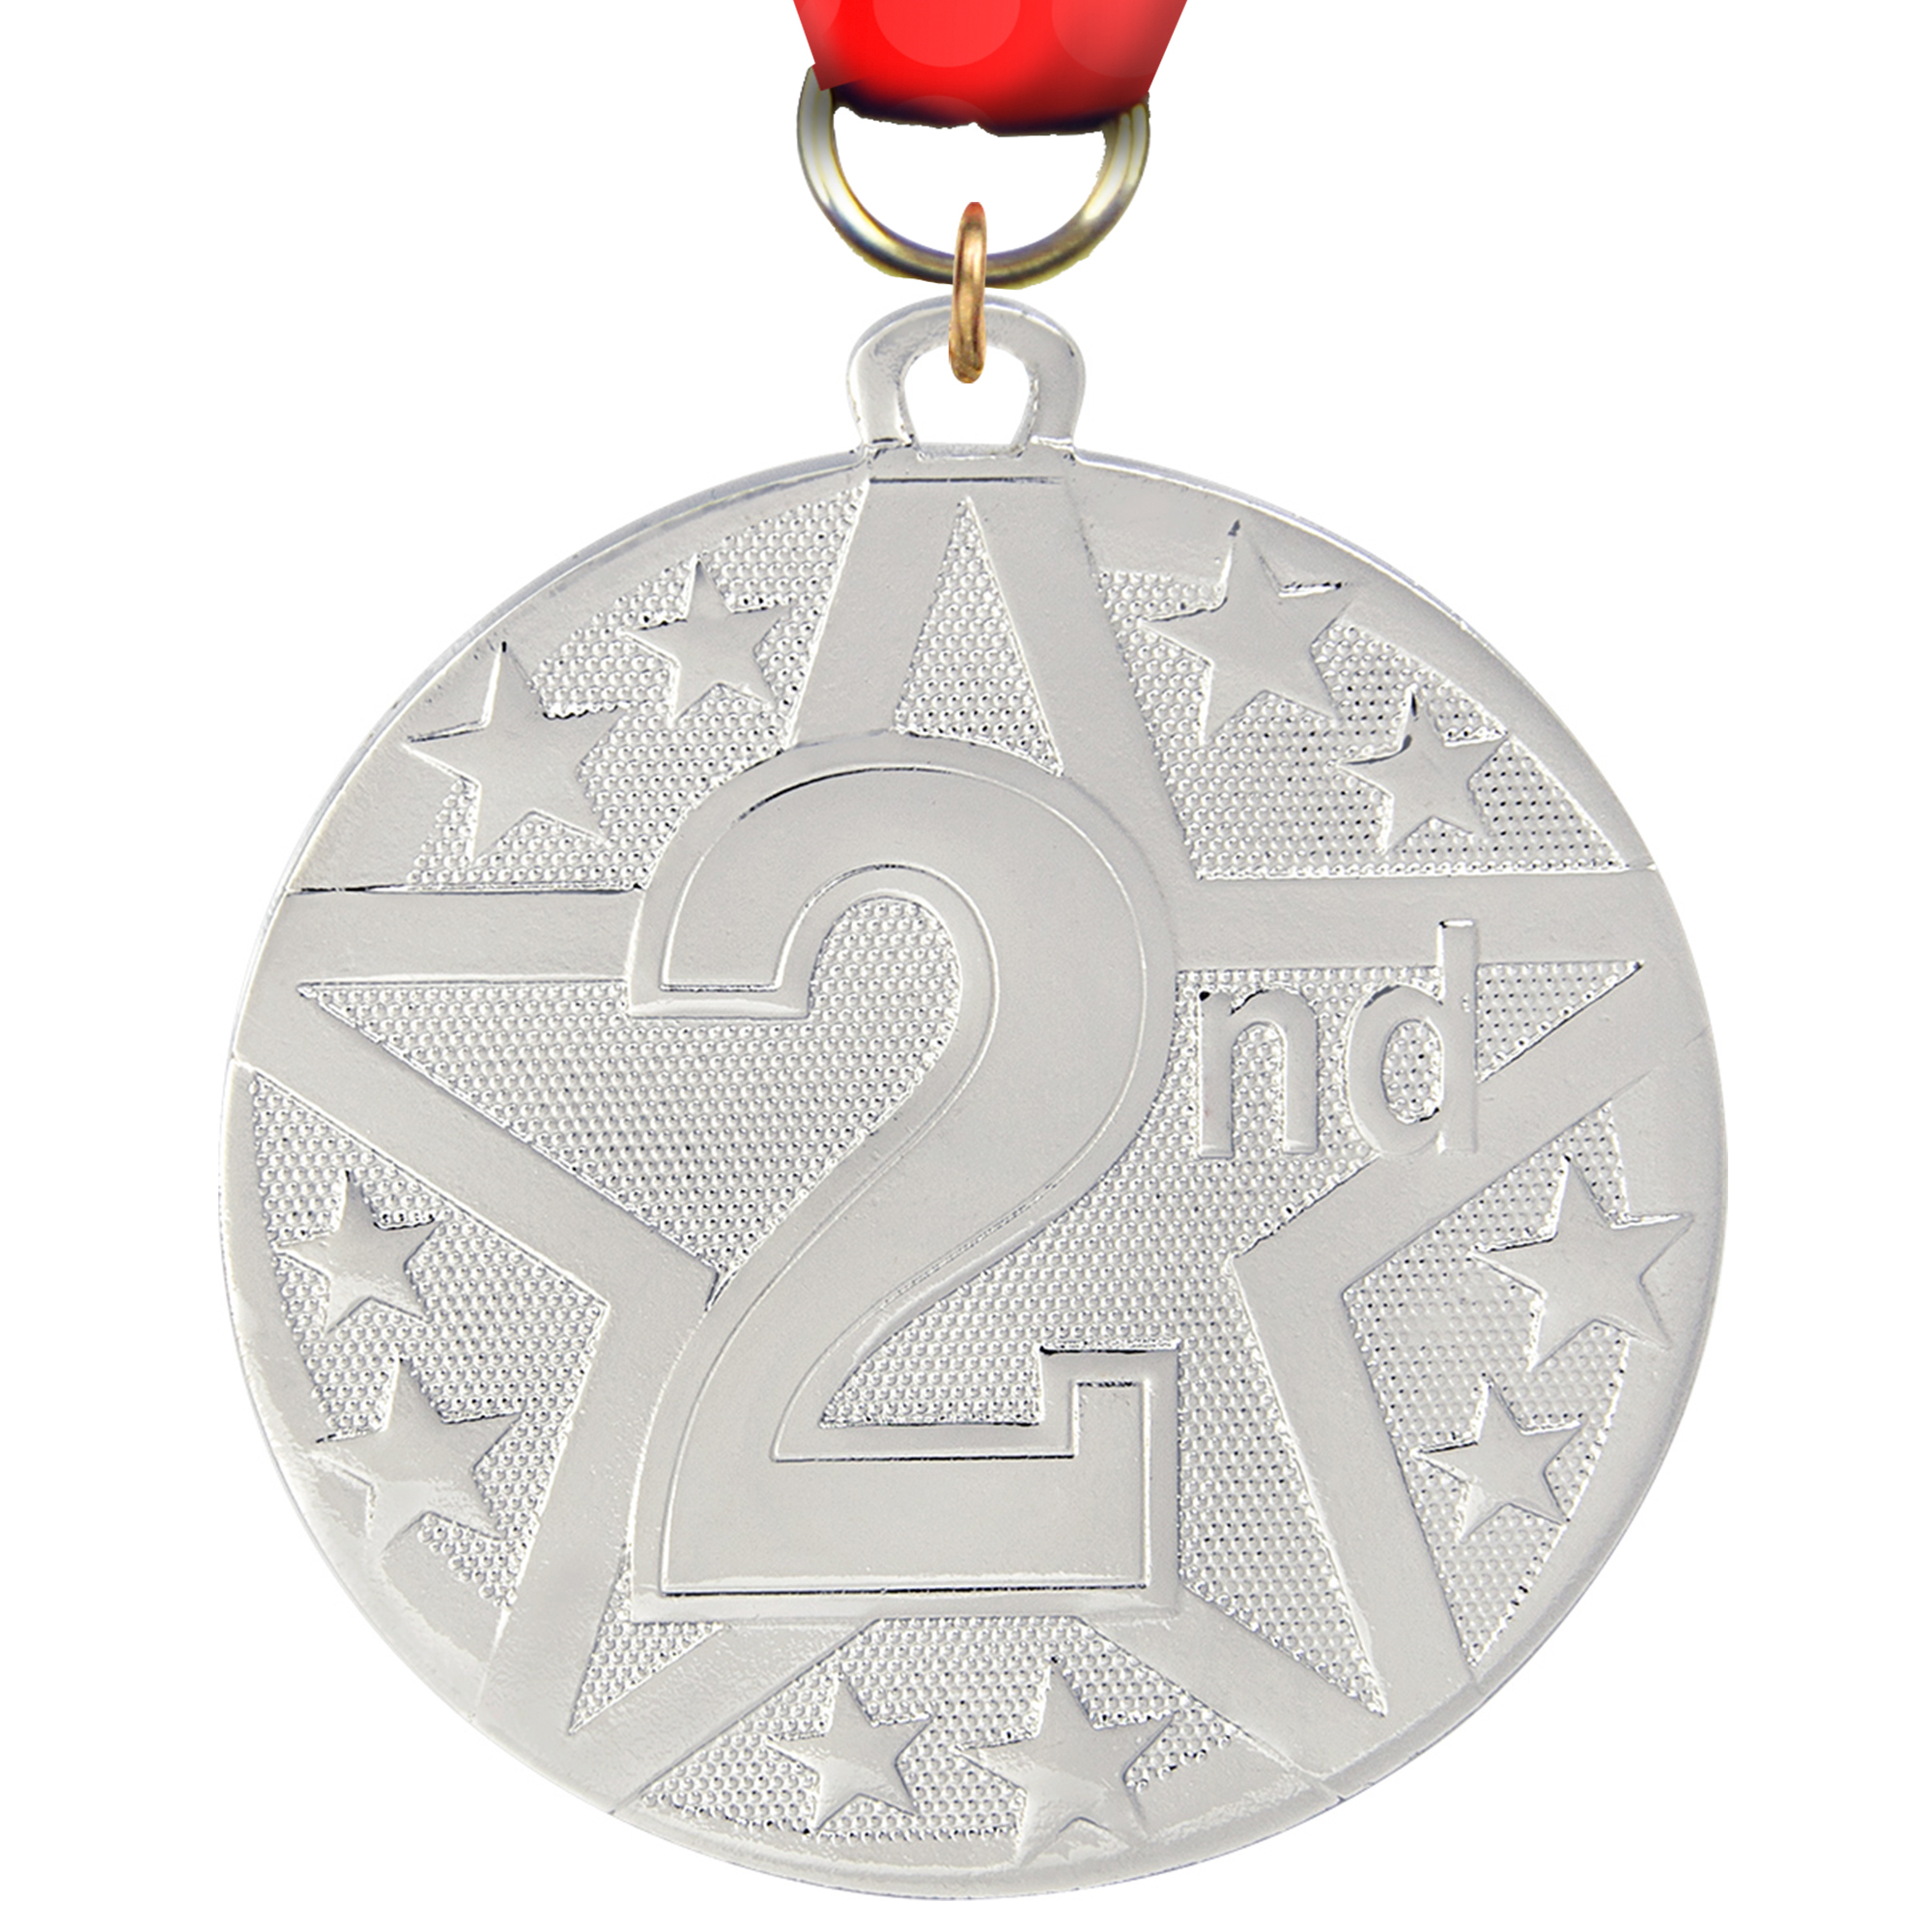 2nd Bright Superstar Medal